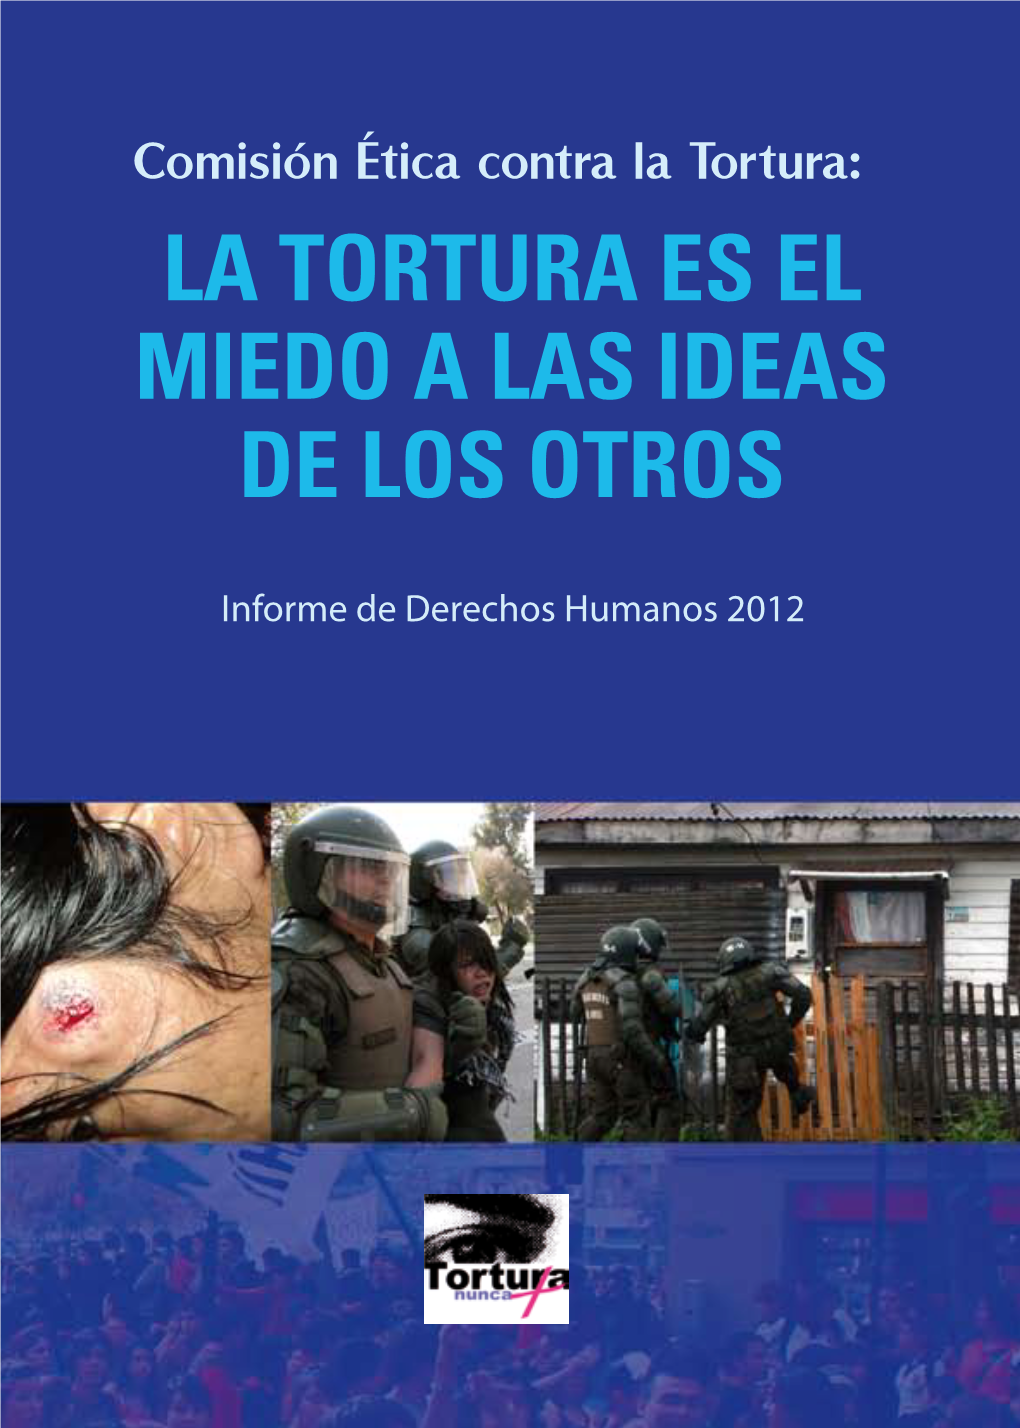 La Tortura Es El Miedo a Las Ideas De Los Otros Informe De Derechos Humanos 2012 Comisión Ética Contra La Tortura